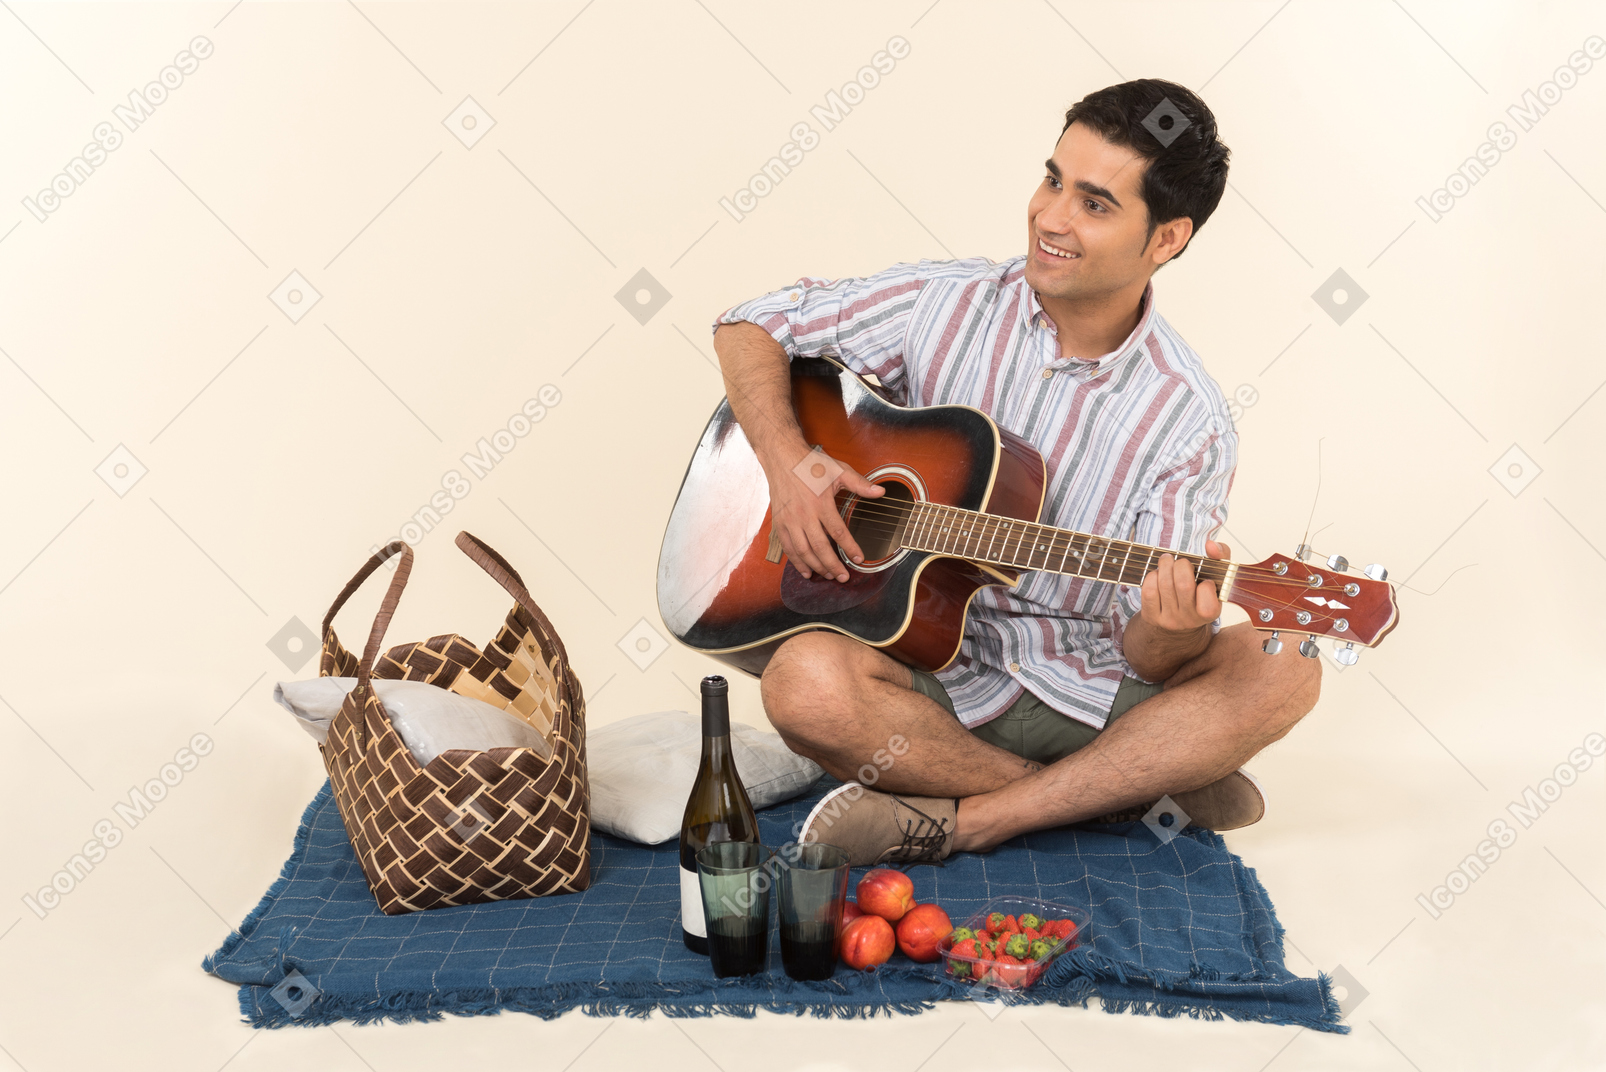 Молодой кавказский парень сидит возле корзины для пикника на одеяле и играет на гитаре